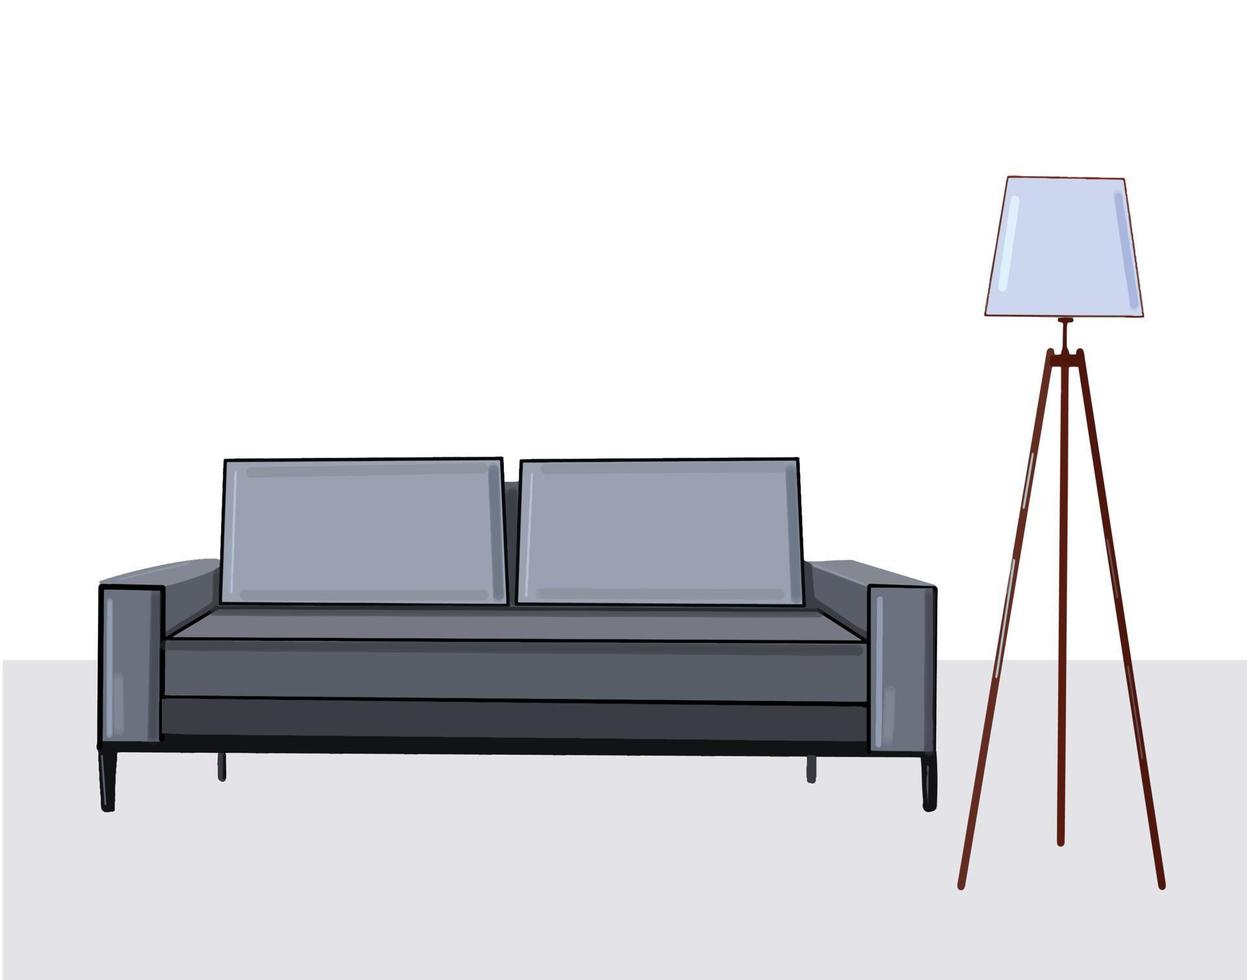 habitación con sofá gris y lámpara de suelo, ilustración vectorial de diseño interior moderno vector